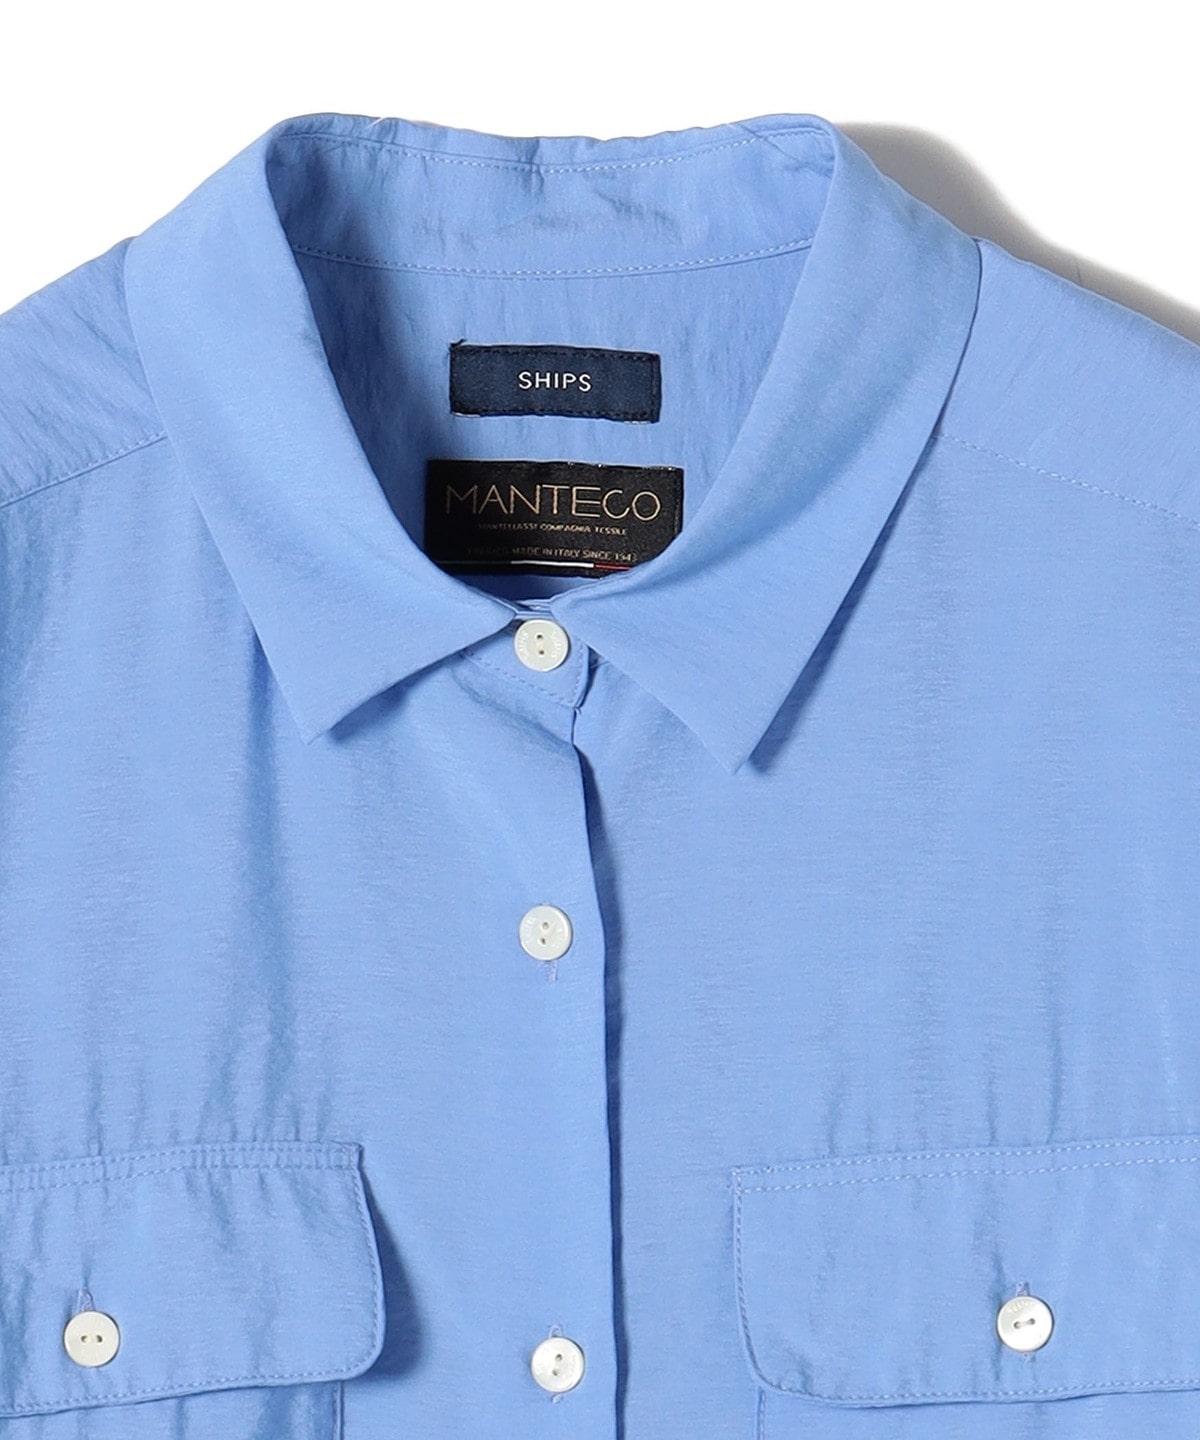 手洗い可能〉MANTECOダブルポケットシャツ: シャツ/ブラウス SHIPS 